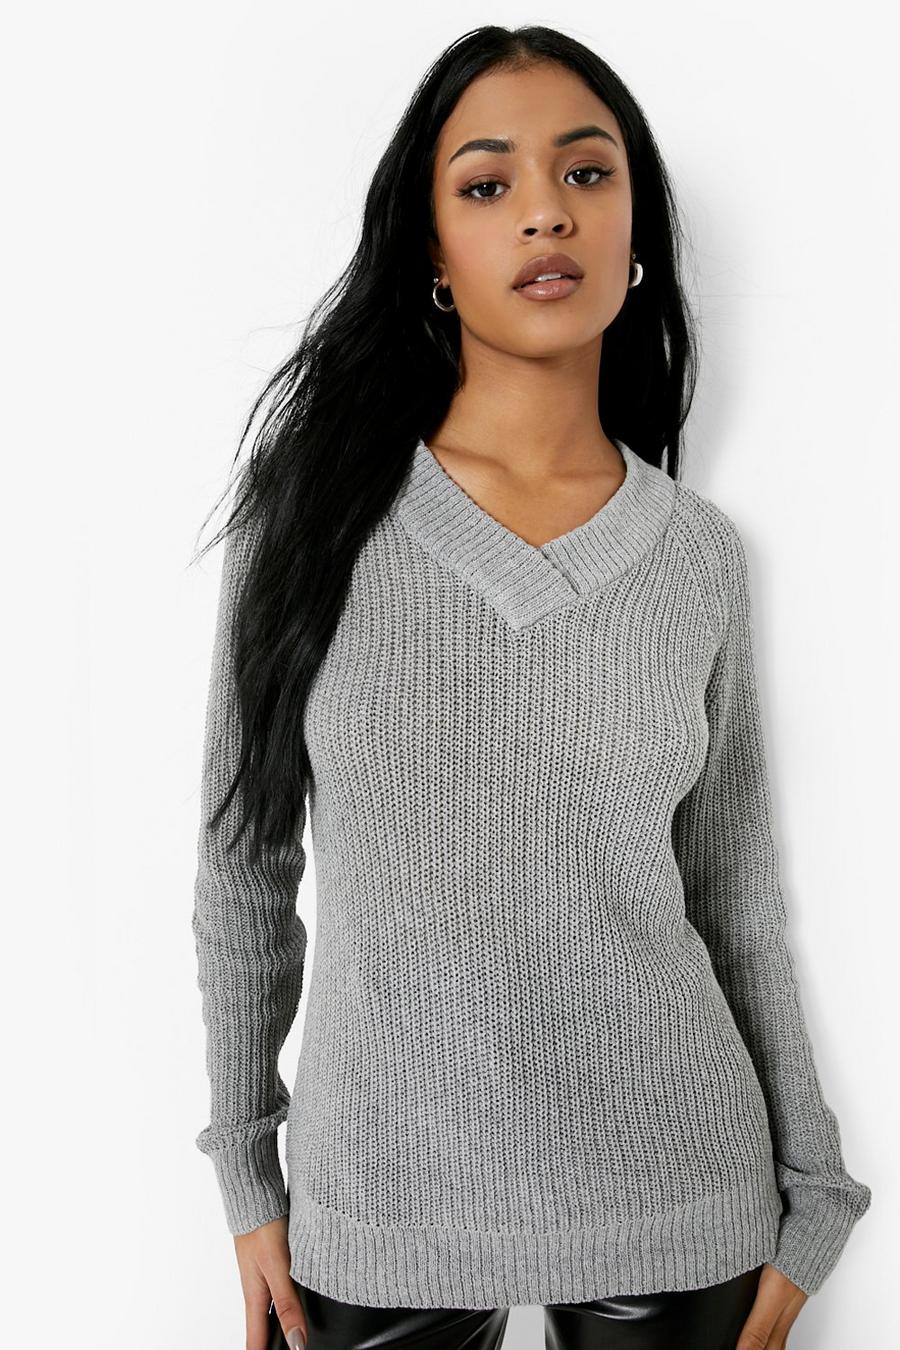 אפור grigio סוודר משוחרר מבד ממוחזר לנשים גבוהות